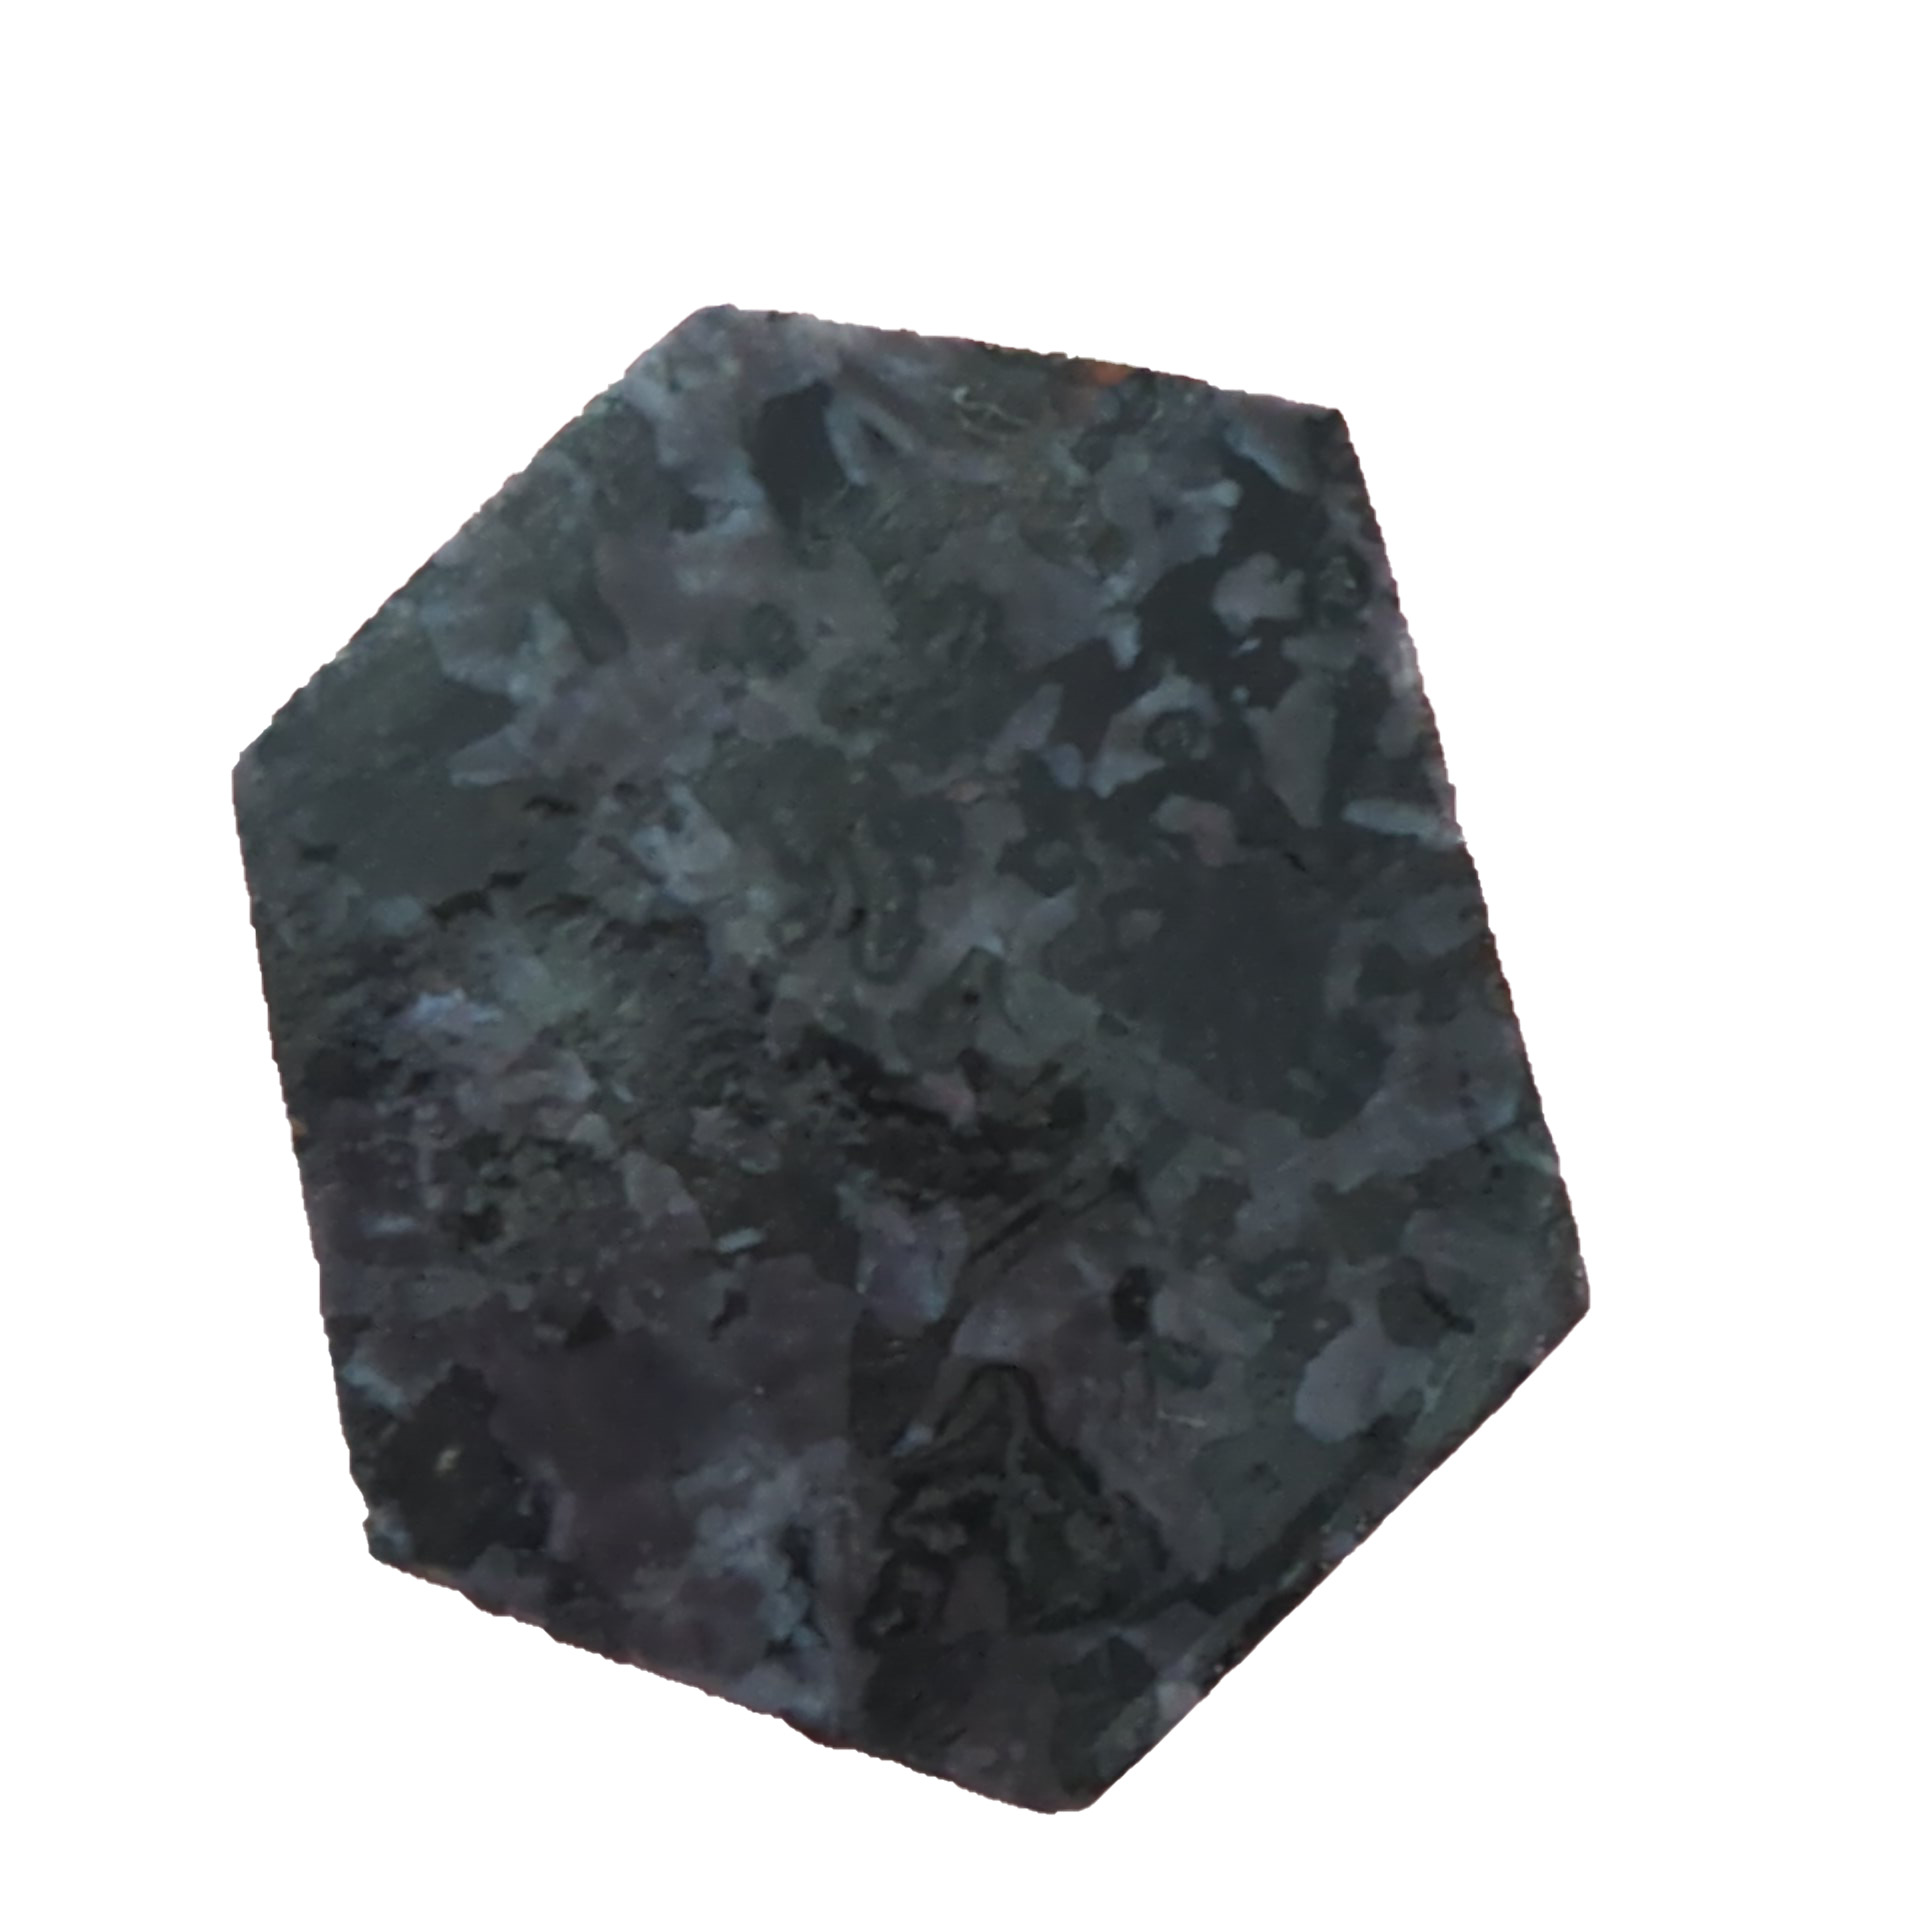 8502-merlinite-1.jpg